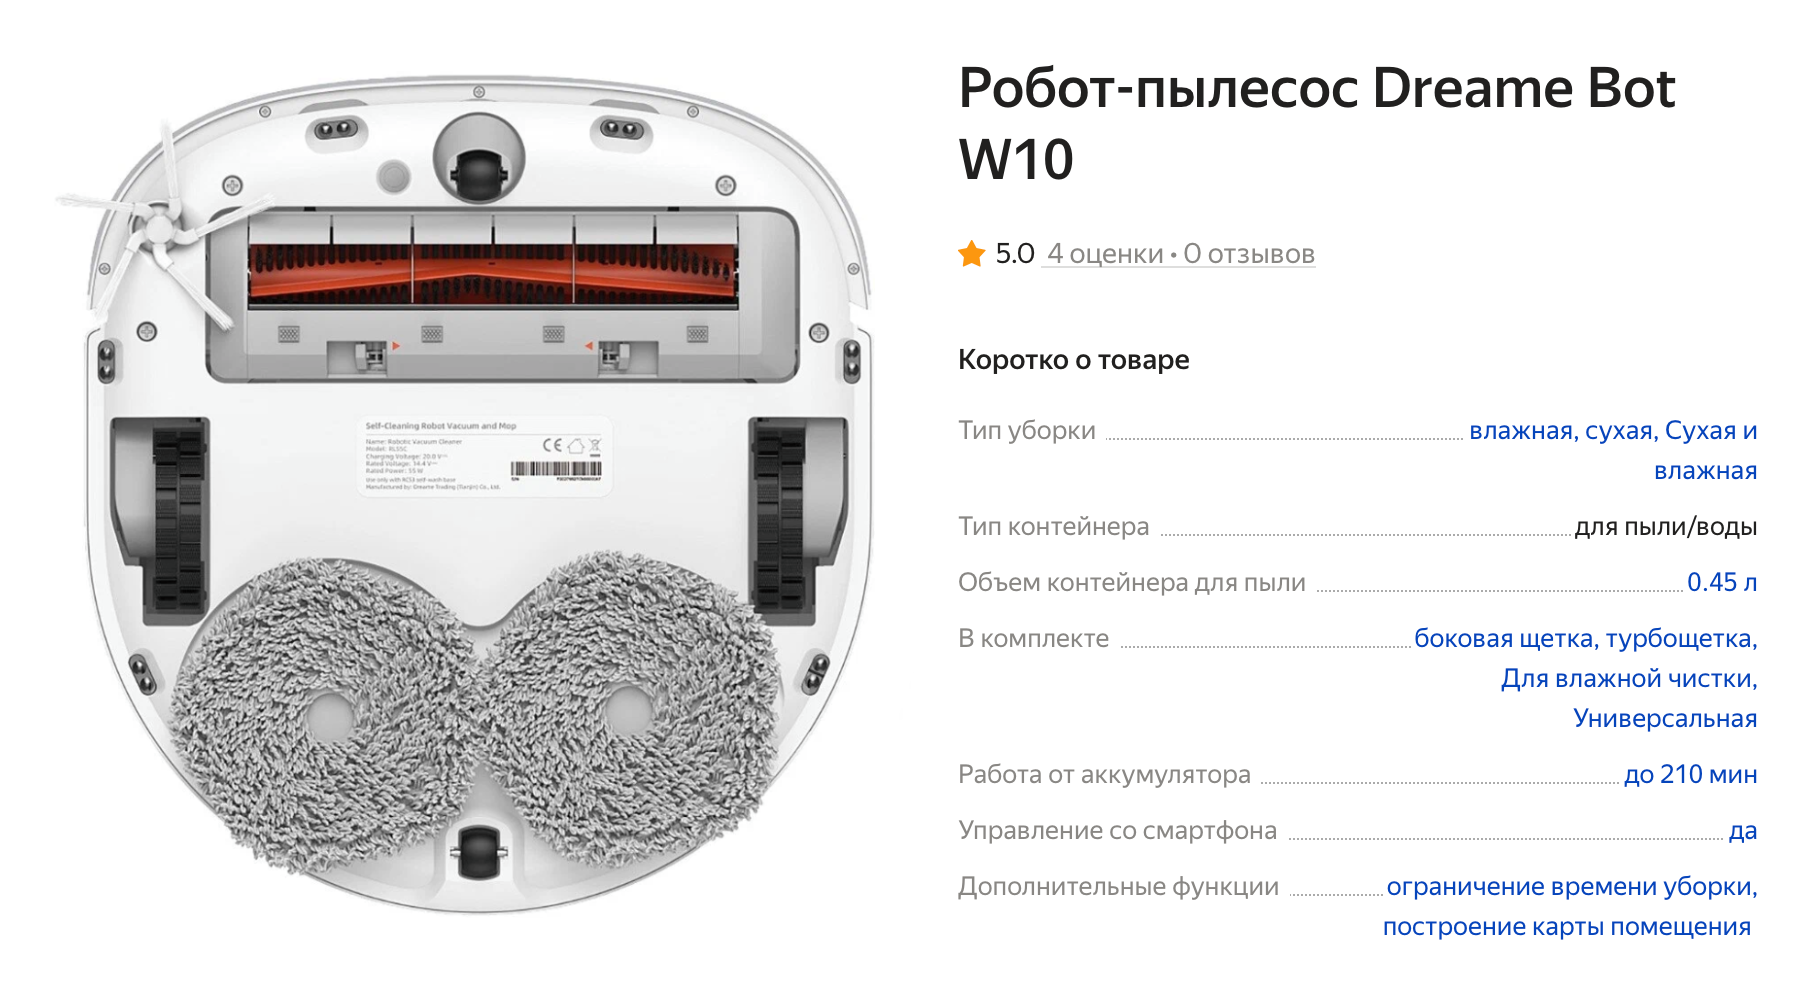 У этой модели есть прижимной механизм, пылесос умеет оттирать пятна. А две тряпки вращаются в разные стороны, поэтому робот хорошо моет пол. Источник: market.yandex.ru